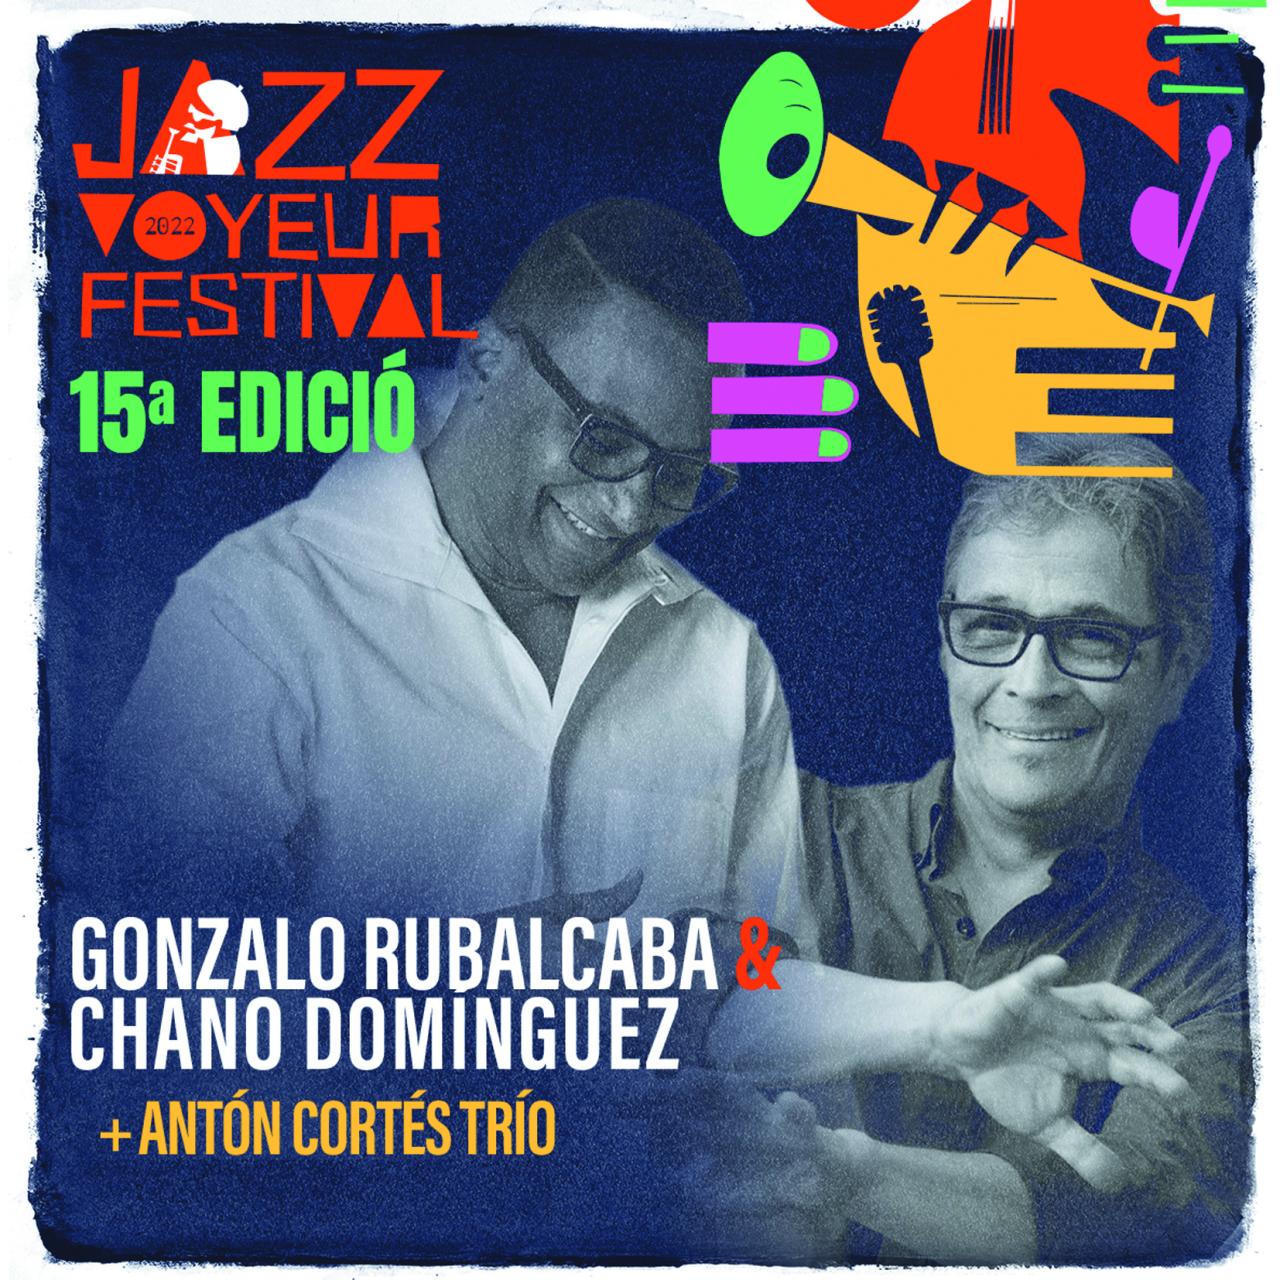 las raíces cubanas de Rubalcaba y las arraigadas al flamenco y al jazz de Domínguez.